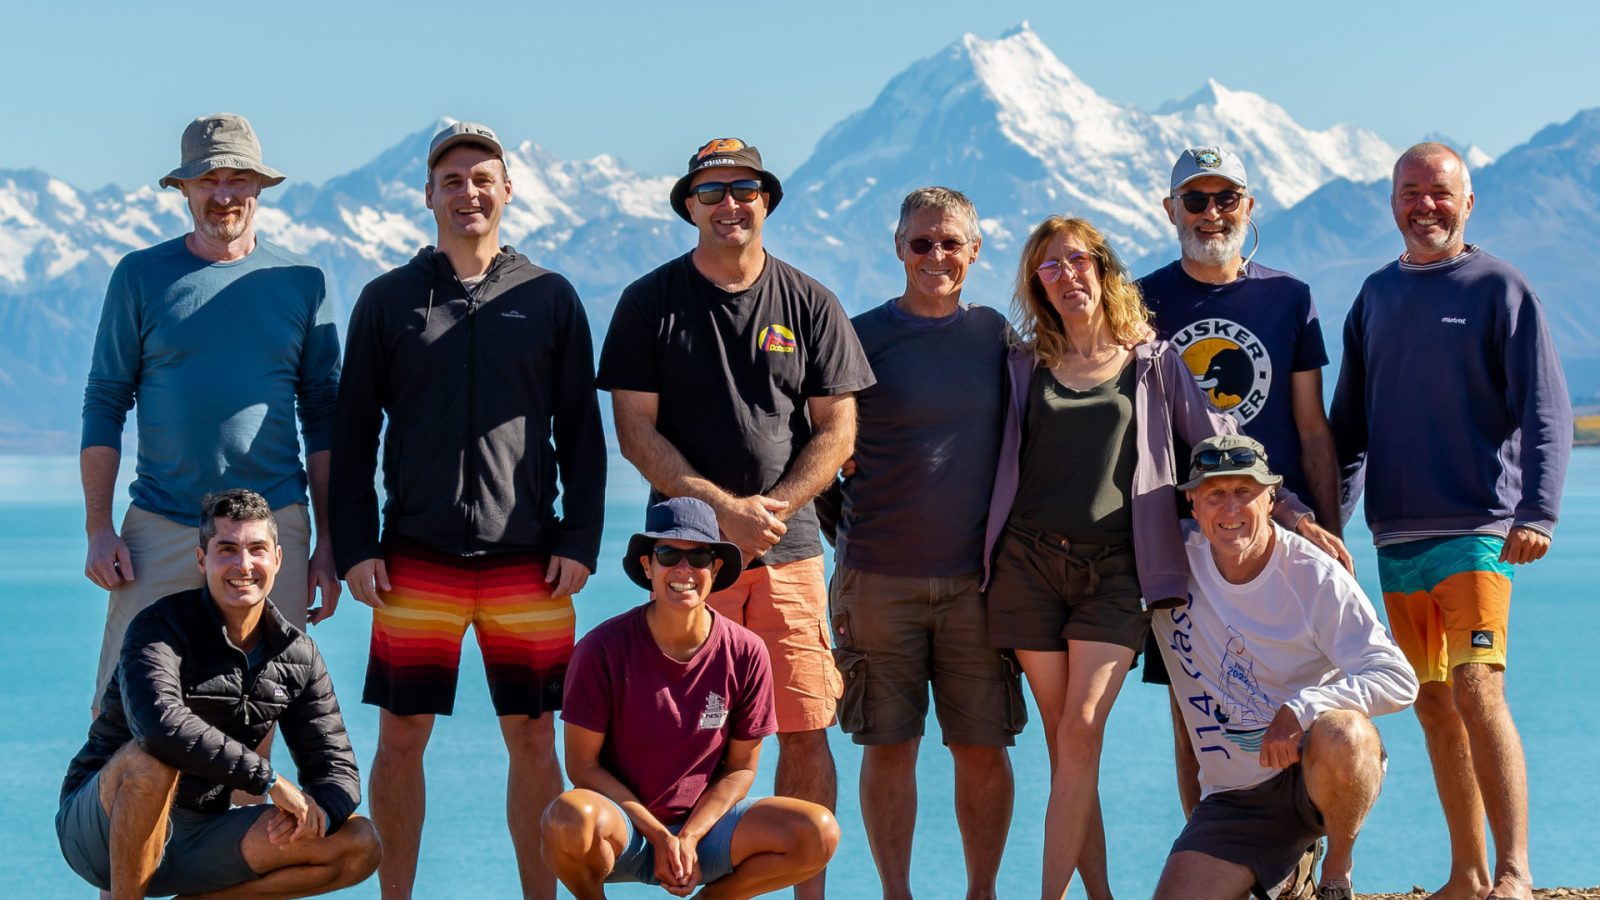 Water Nomads Surfari Trip guests pose in front of Lake Pukaki and Aoraki Mt Cook